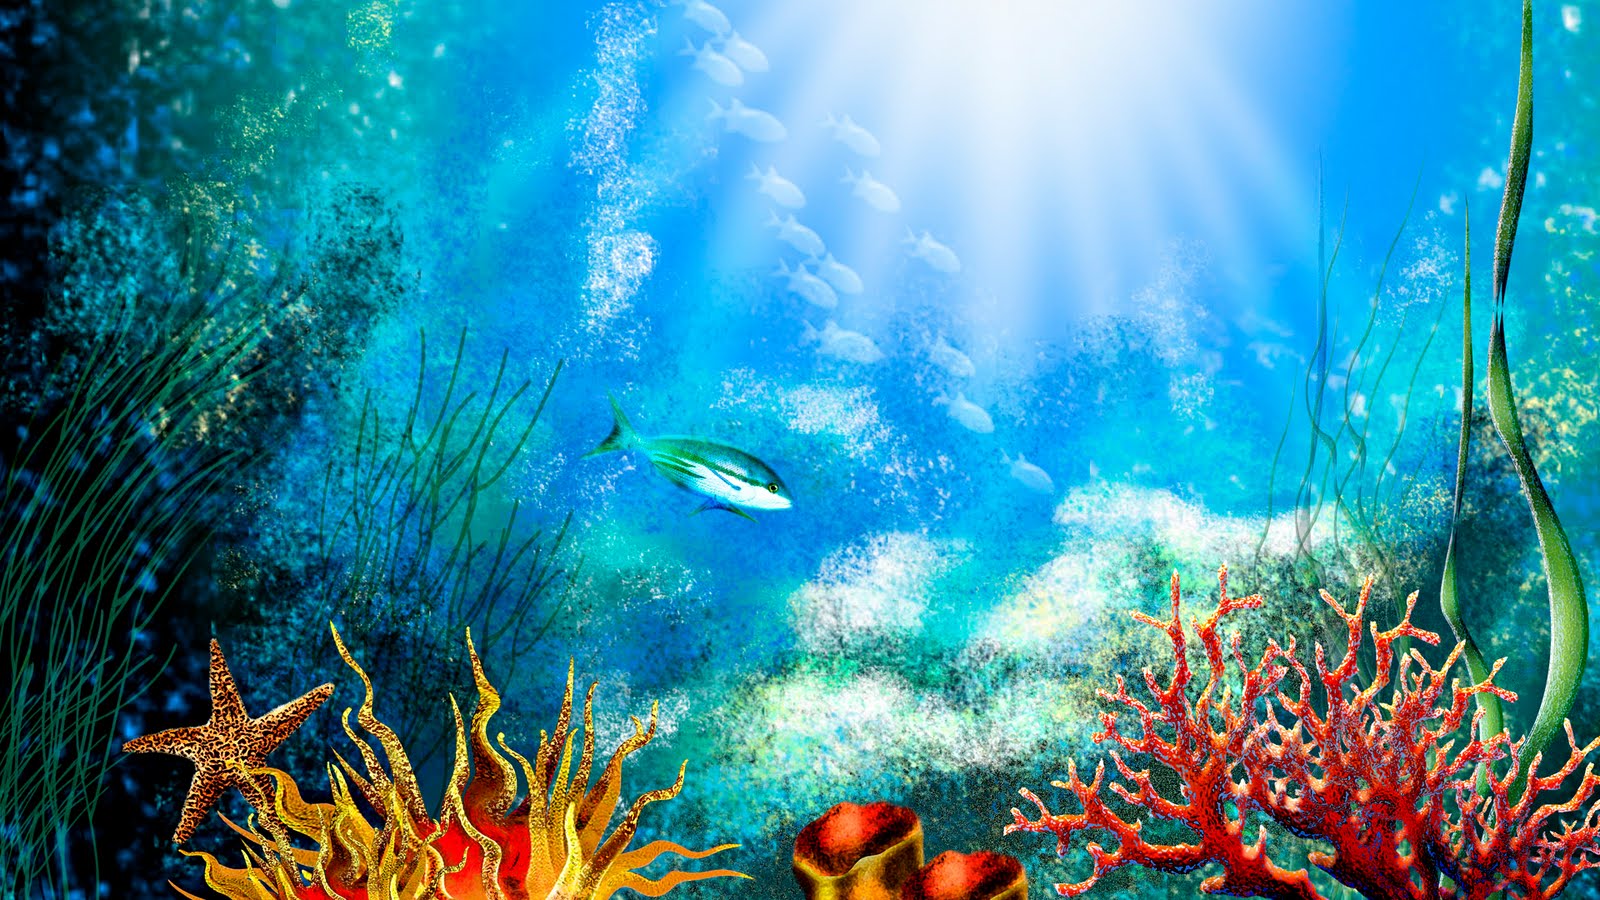 Moving Aquarium Wallpaper - WallpaperSafari